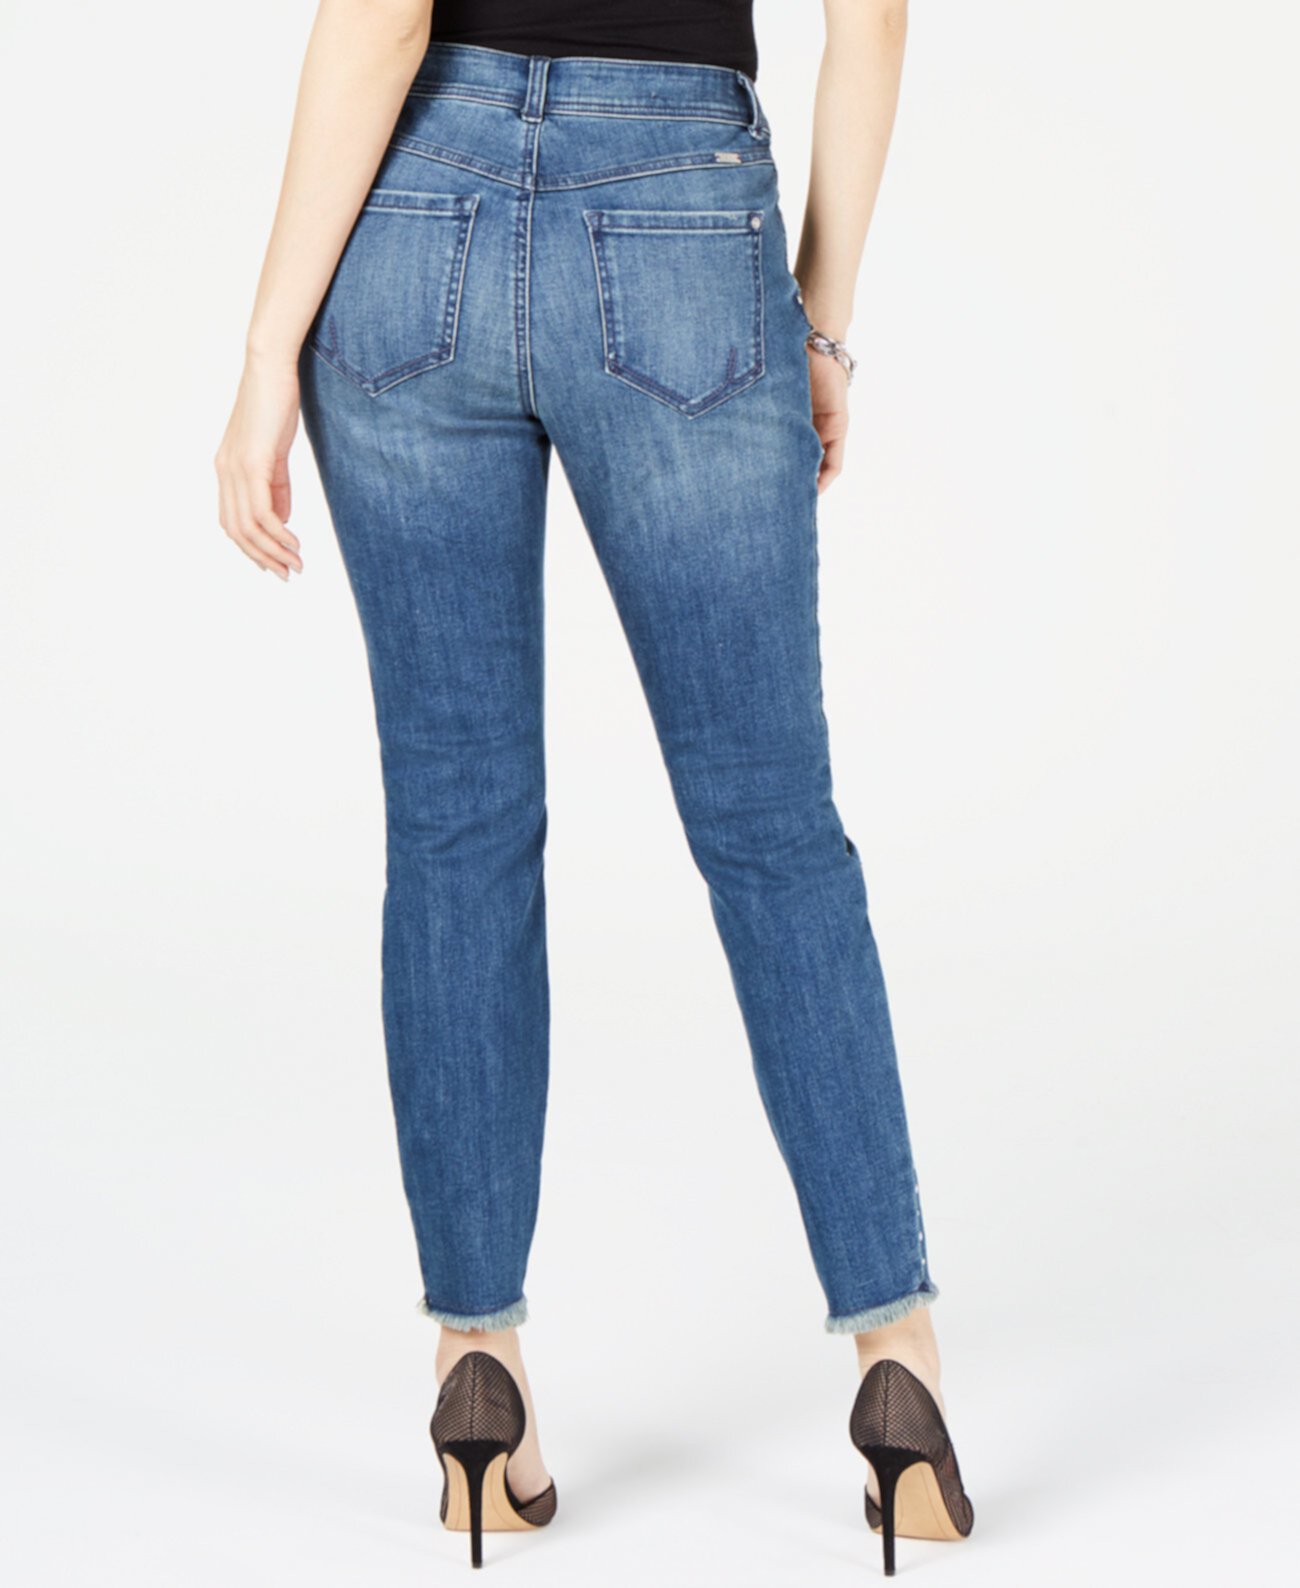 Узкие джинсы скинни с потертостями и потертыми подкладками, созданные для Macy's INC International Concepts